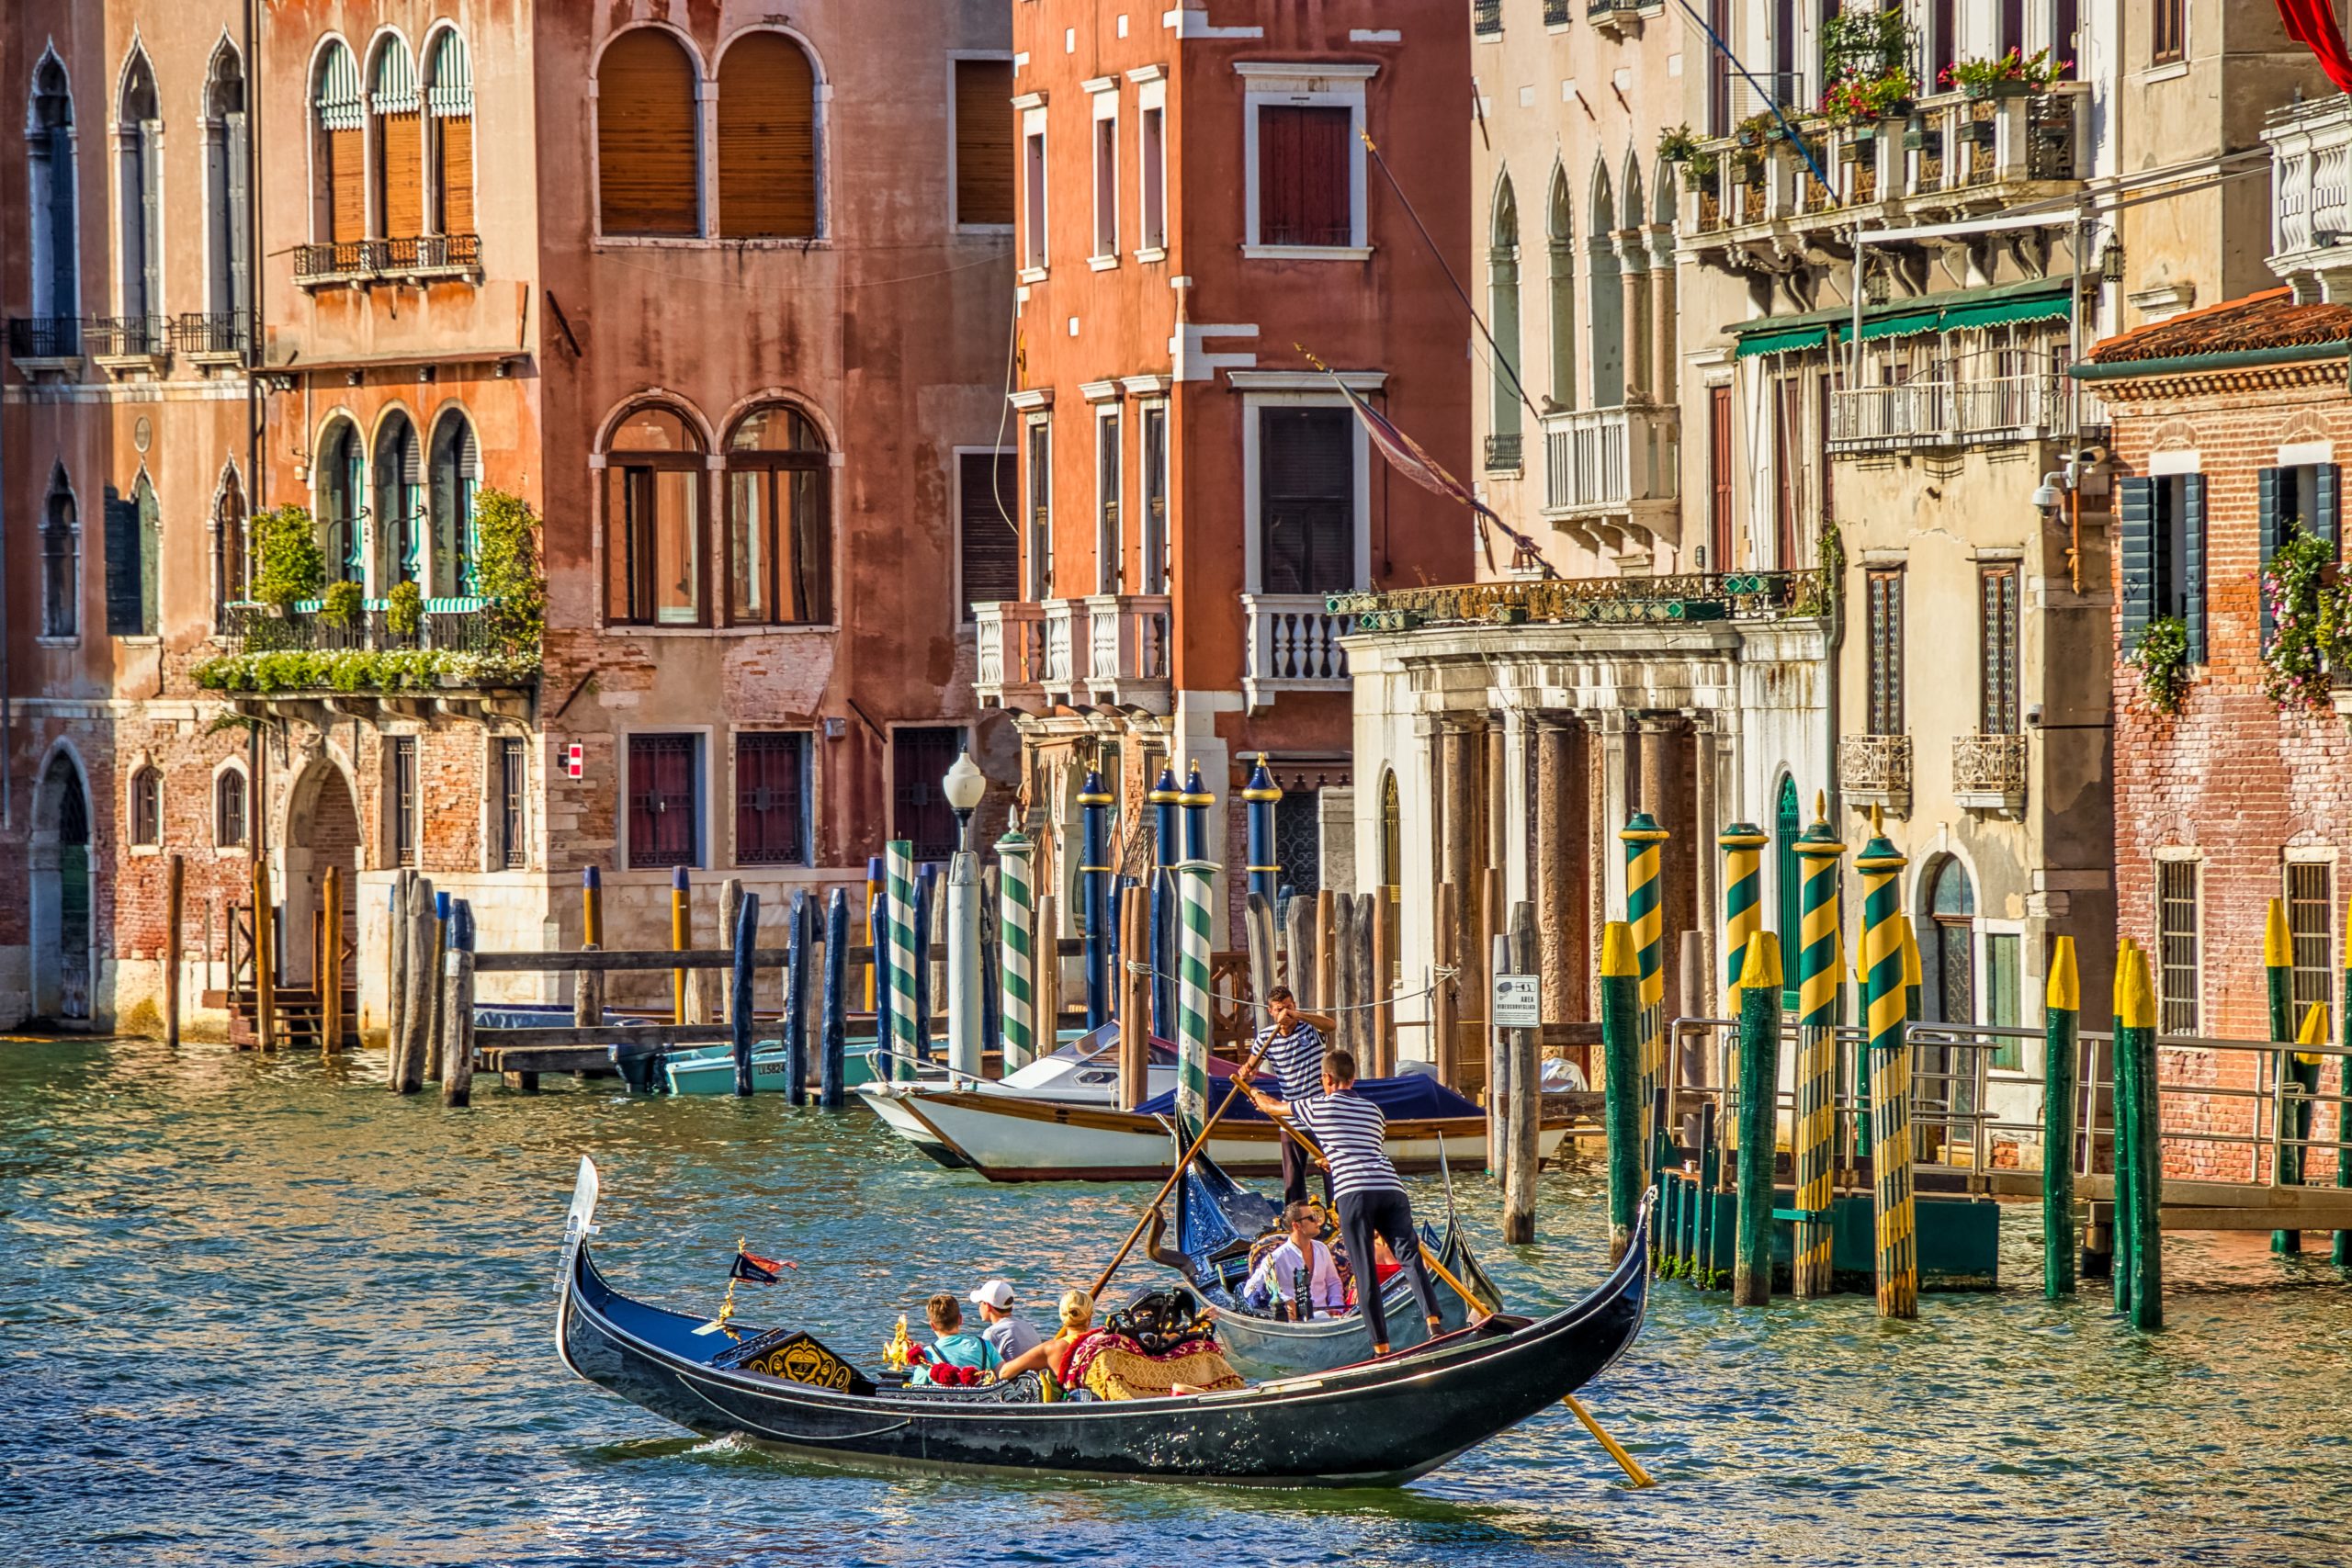 Венеция столица какого государства. Италия Венеция гондолы. Италия гондола Венеция гондола. Венеция каналы гондолы. Гранд канал Италия гондолы.